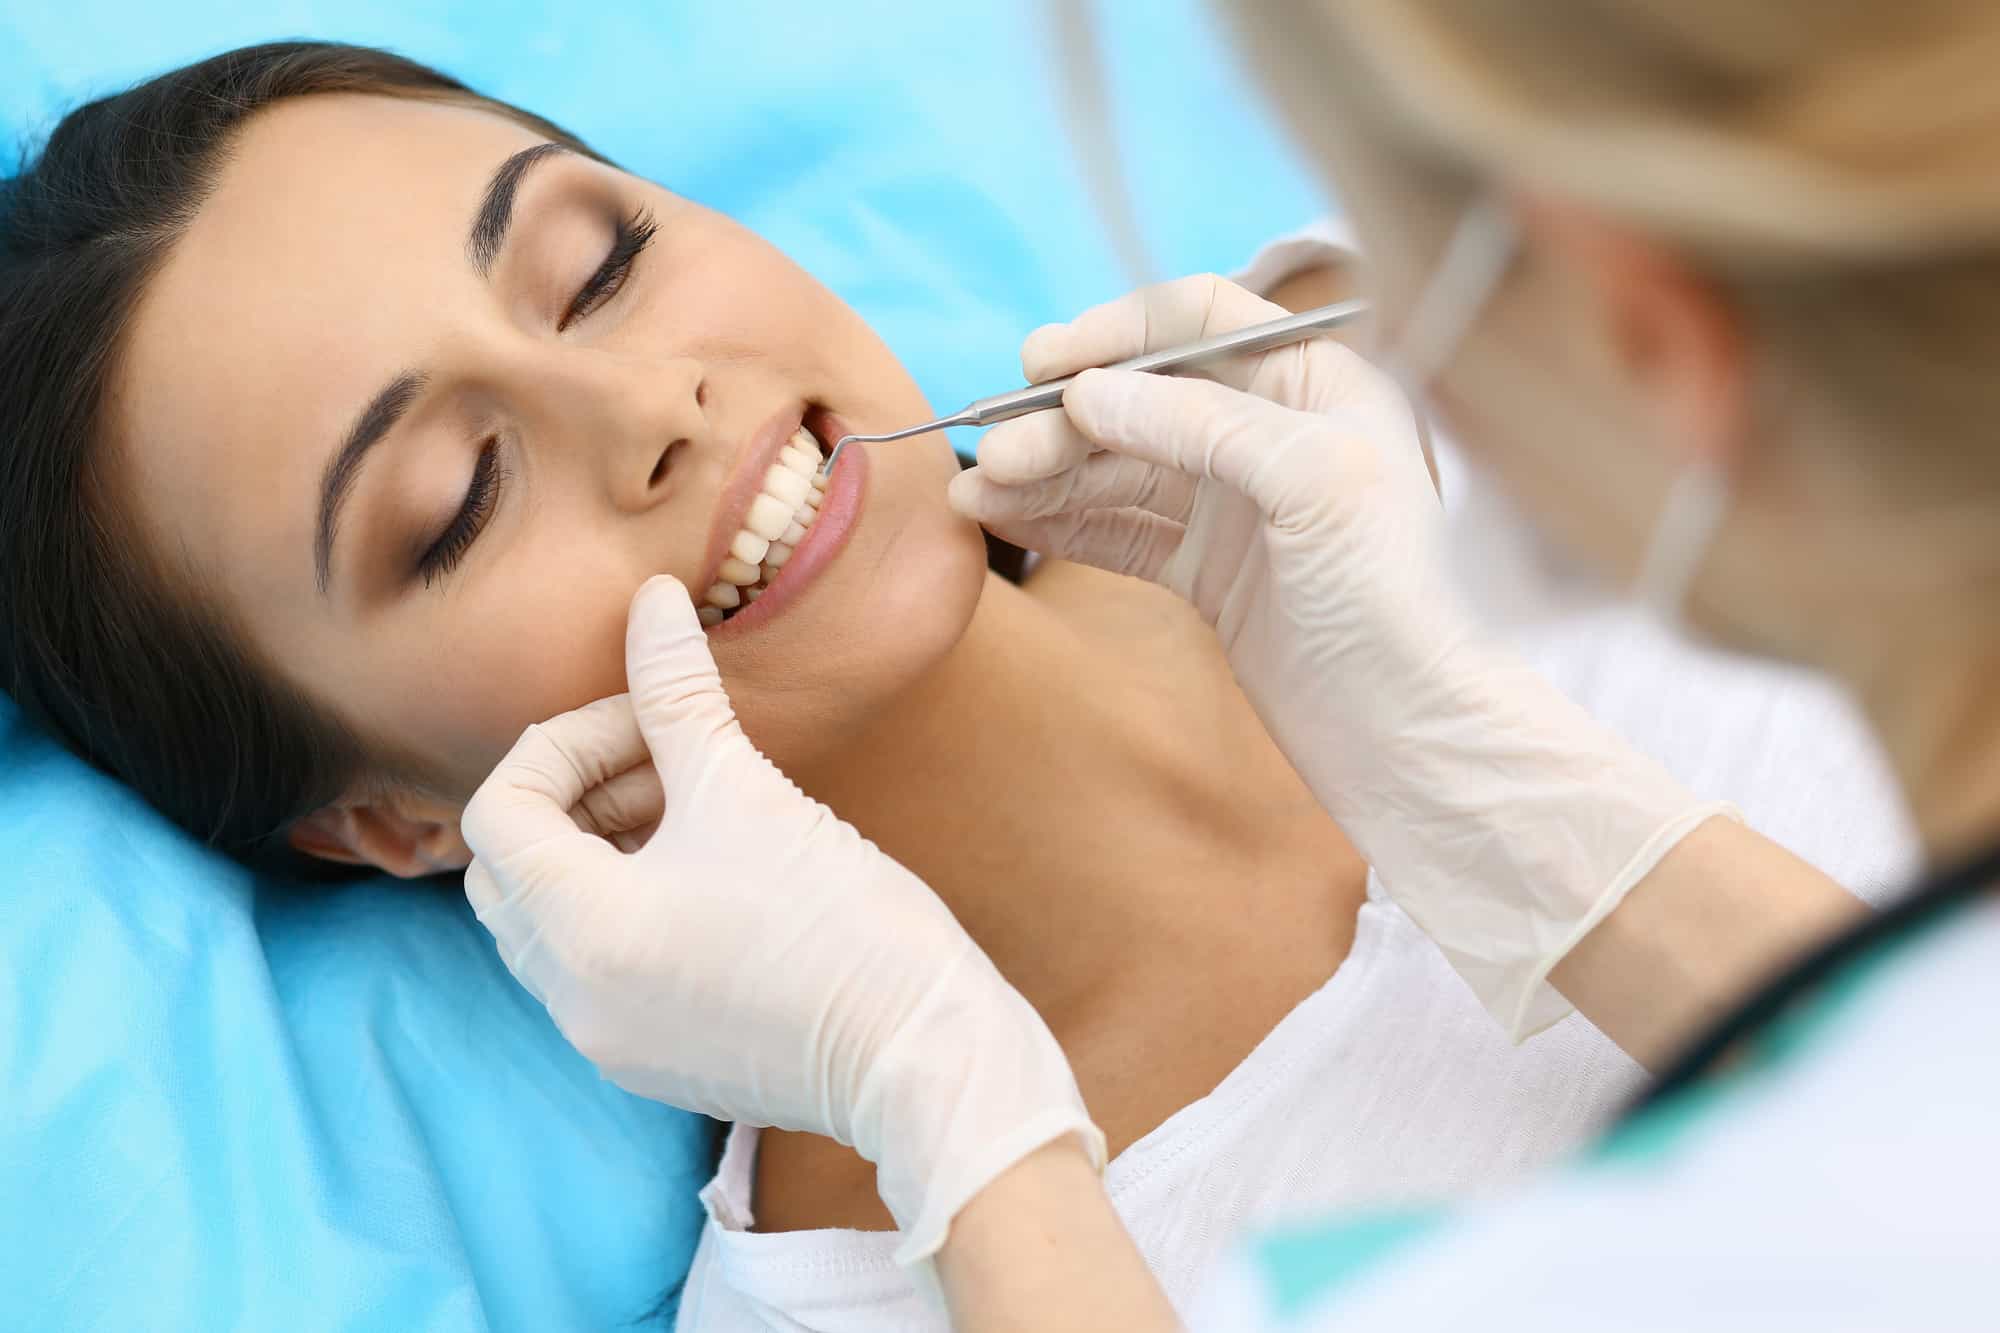 Woman getting teeth flossed by dentist